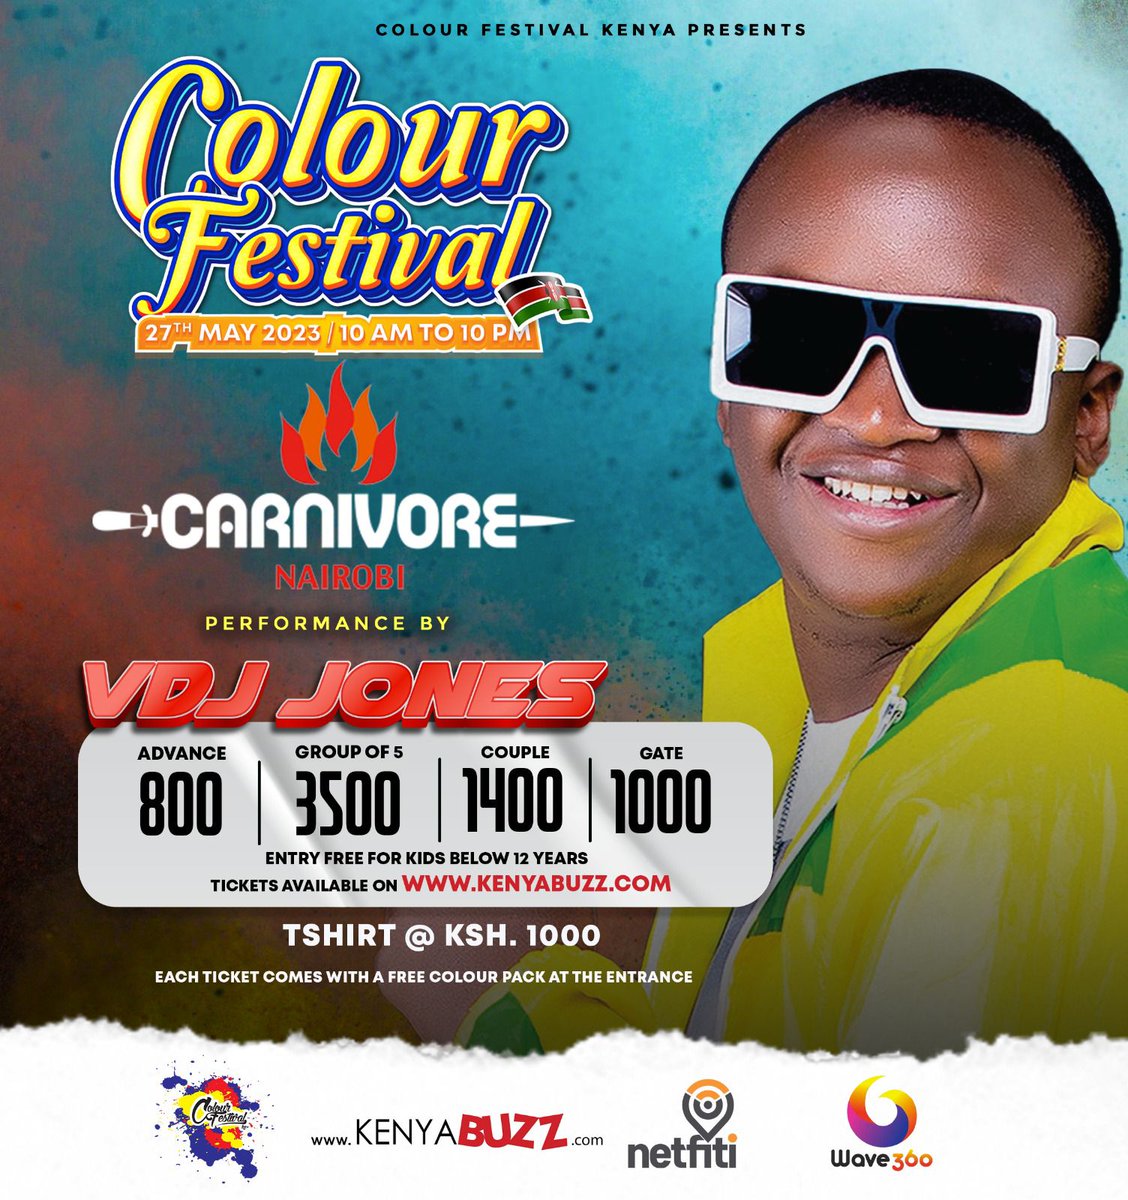 #ColourFestival
kenyabuzz.com/events/event/c…